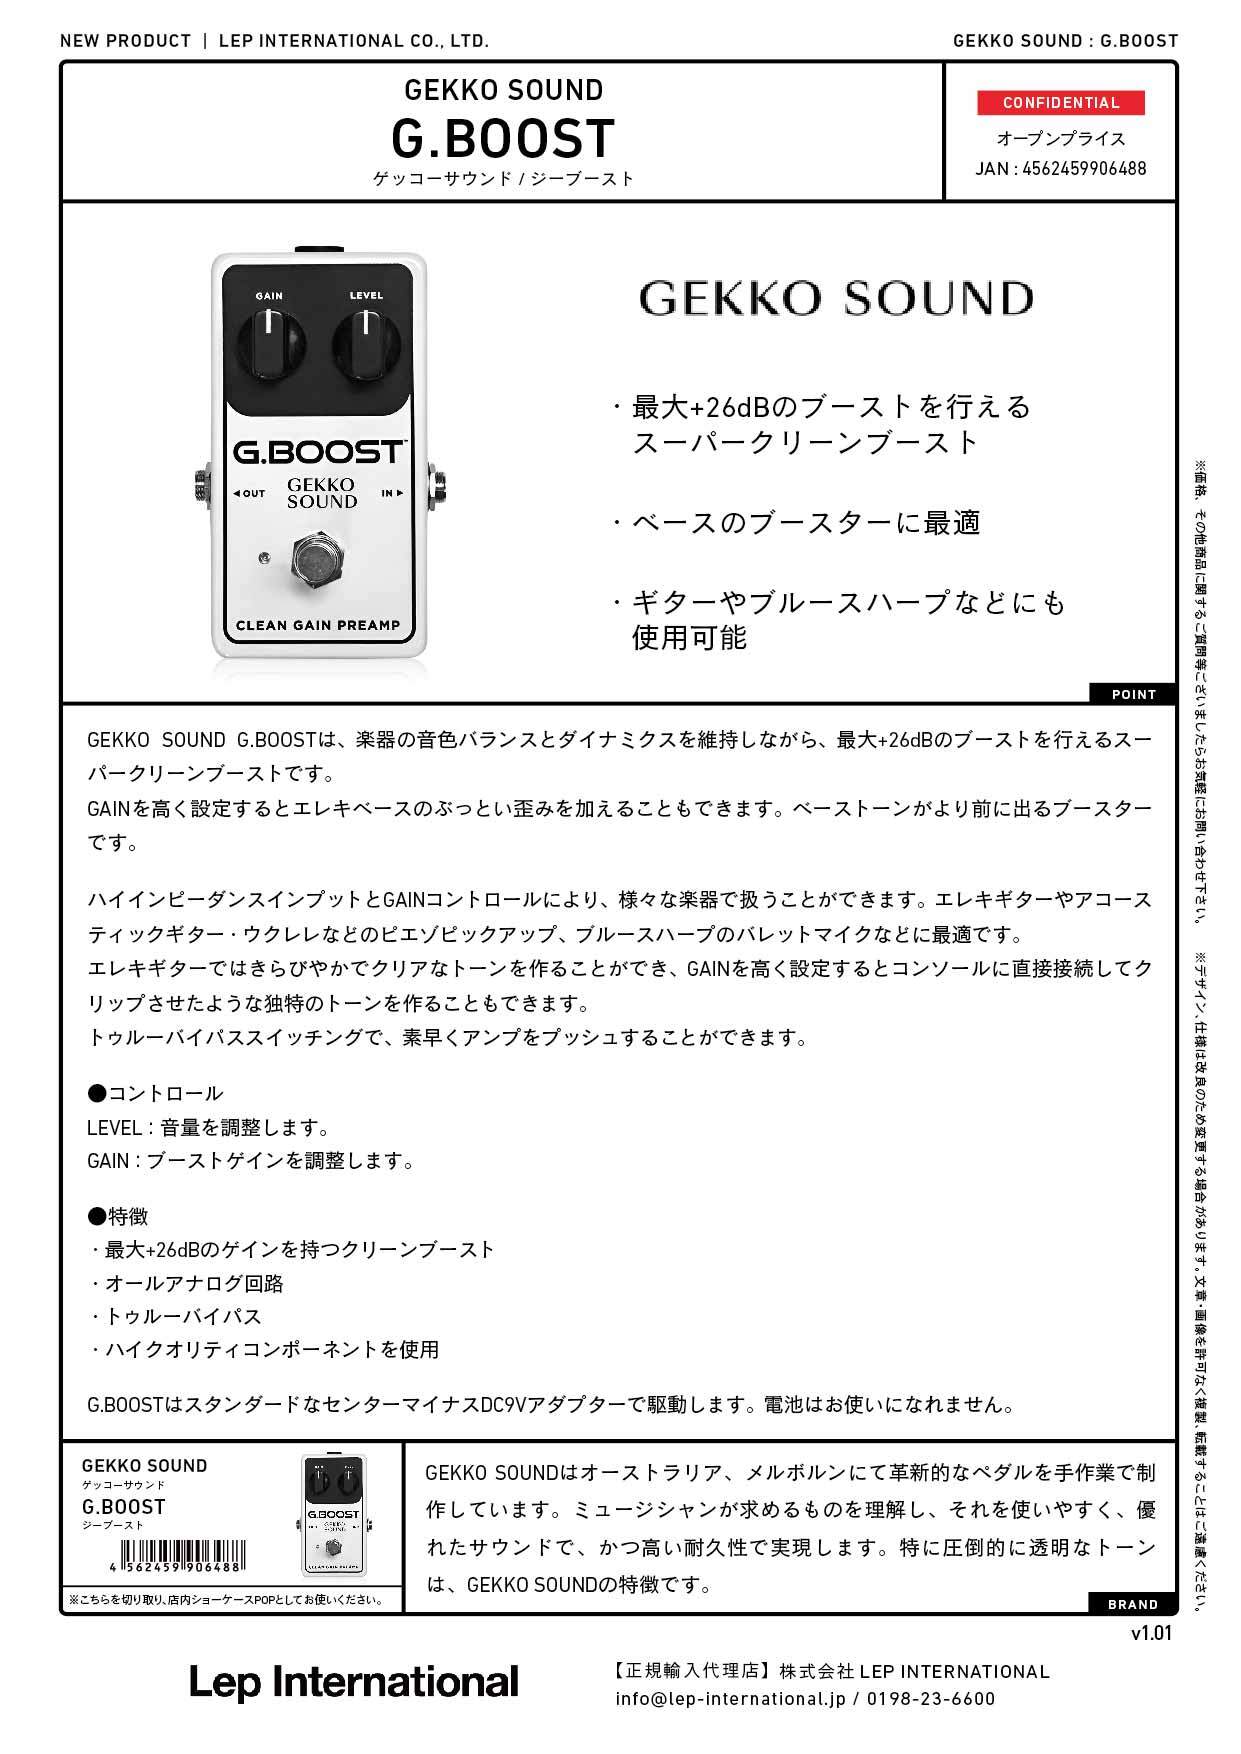 GEKKO SOUND / G.BOOST